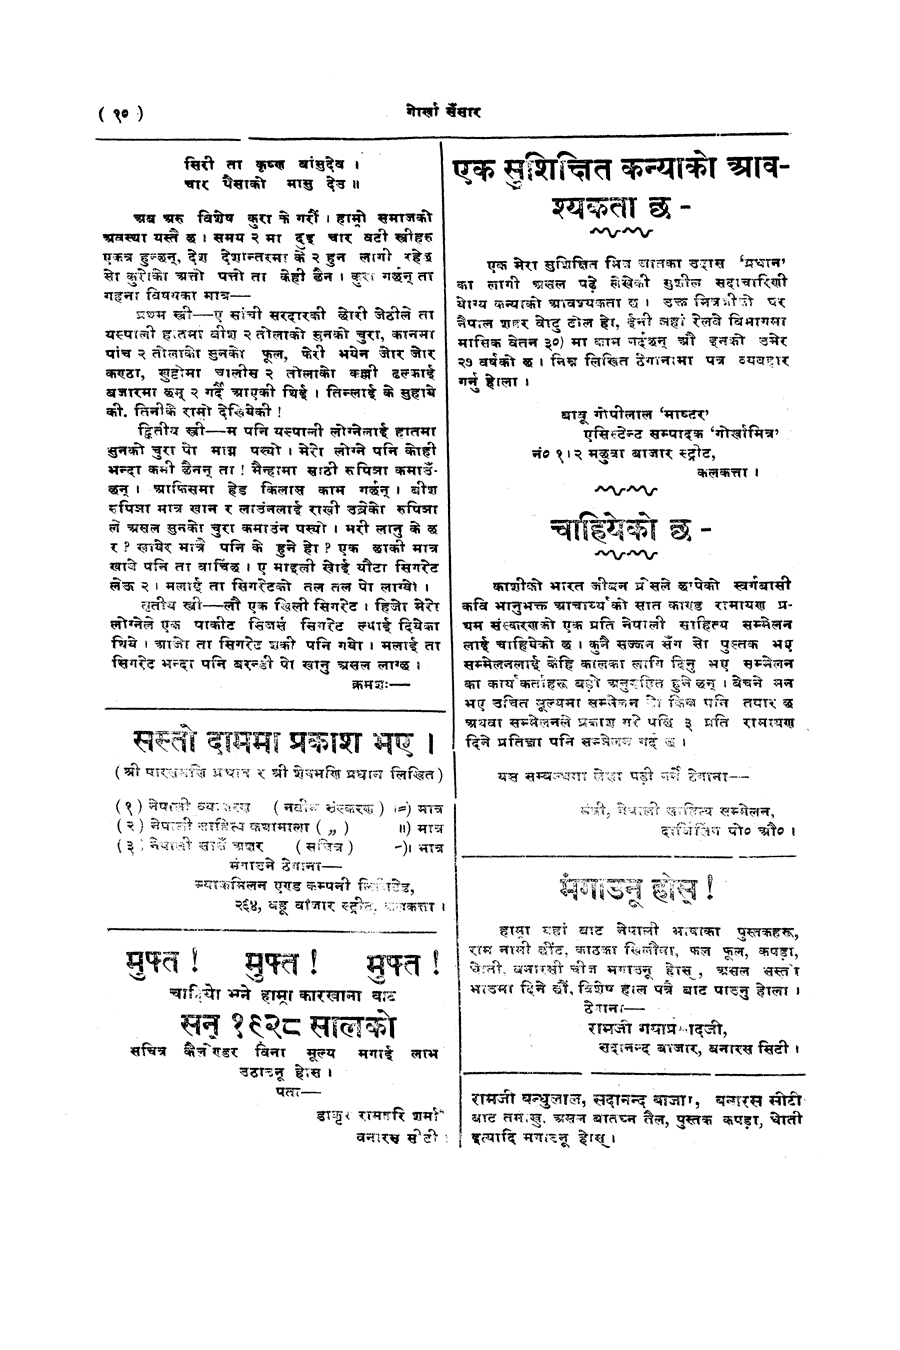 Gorkha Sansar, 7 Feb 1928, page 10